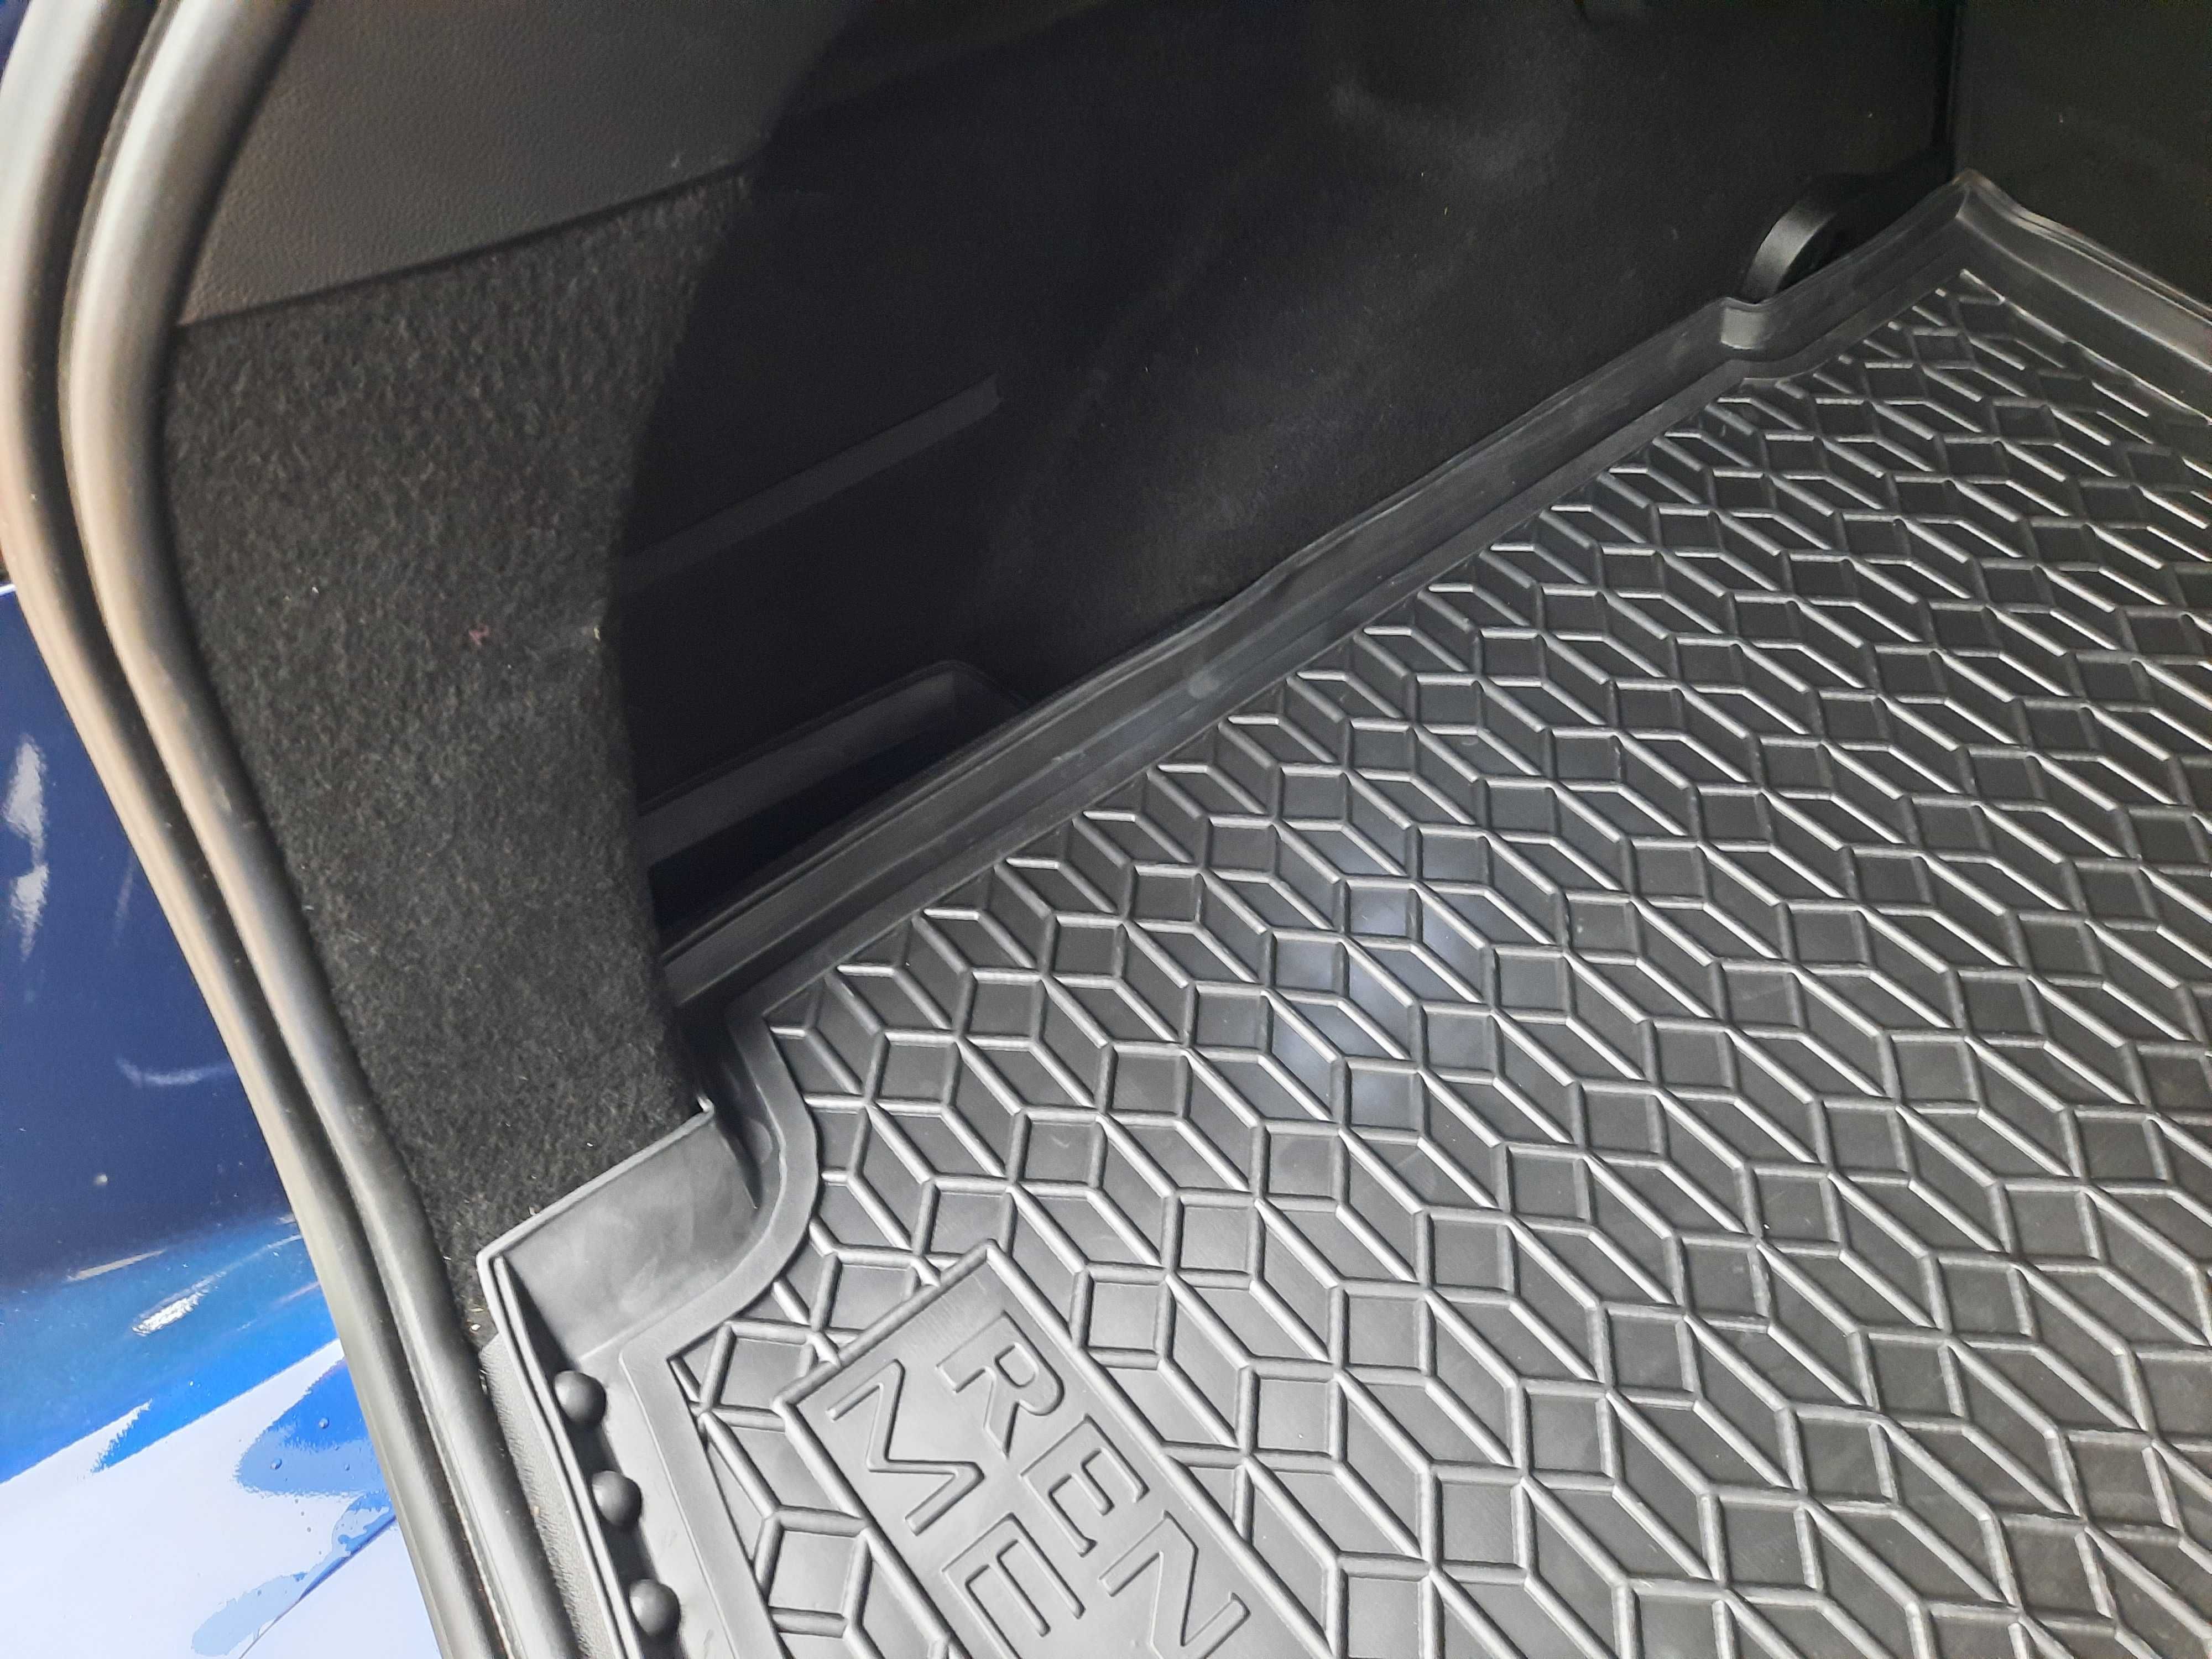 Коврик в багажник резиновый Renault Talisman Megane Sedan Universal